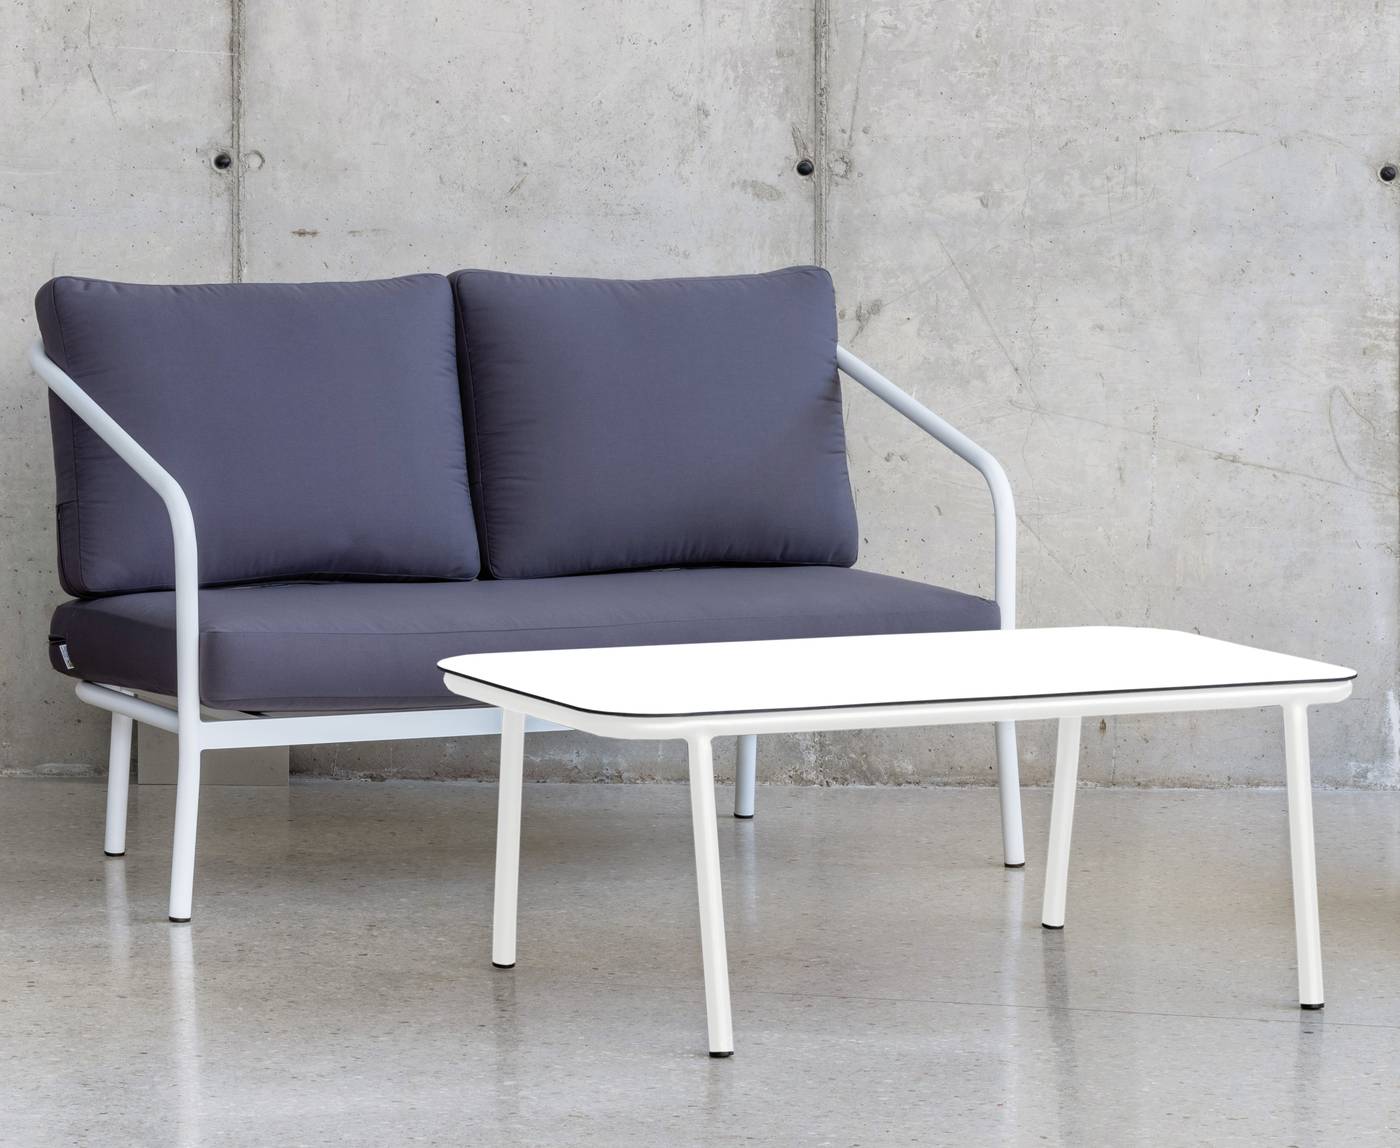 Set Aluminio Alexis-7 - Conjunto: 1 sofá 2 plazas + 2 sillones + 1 mesa de centro. Estructura aluminio color blanco o antracita.